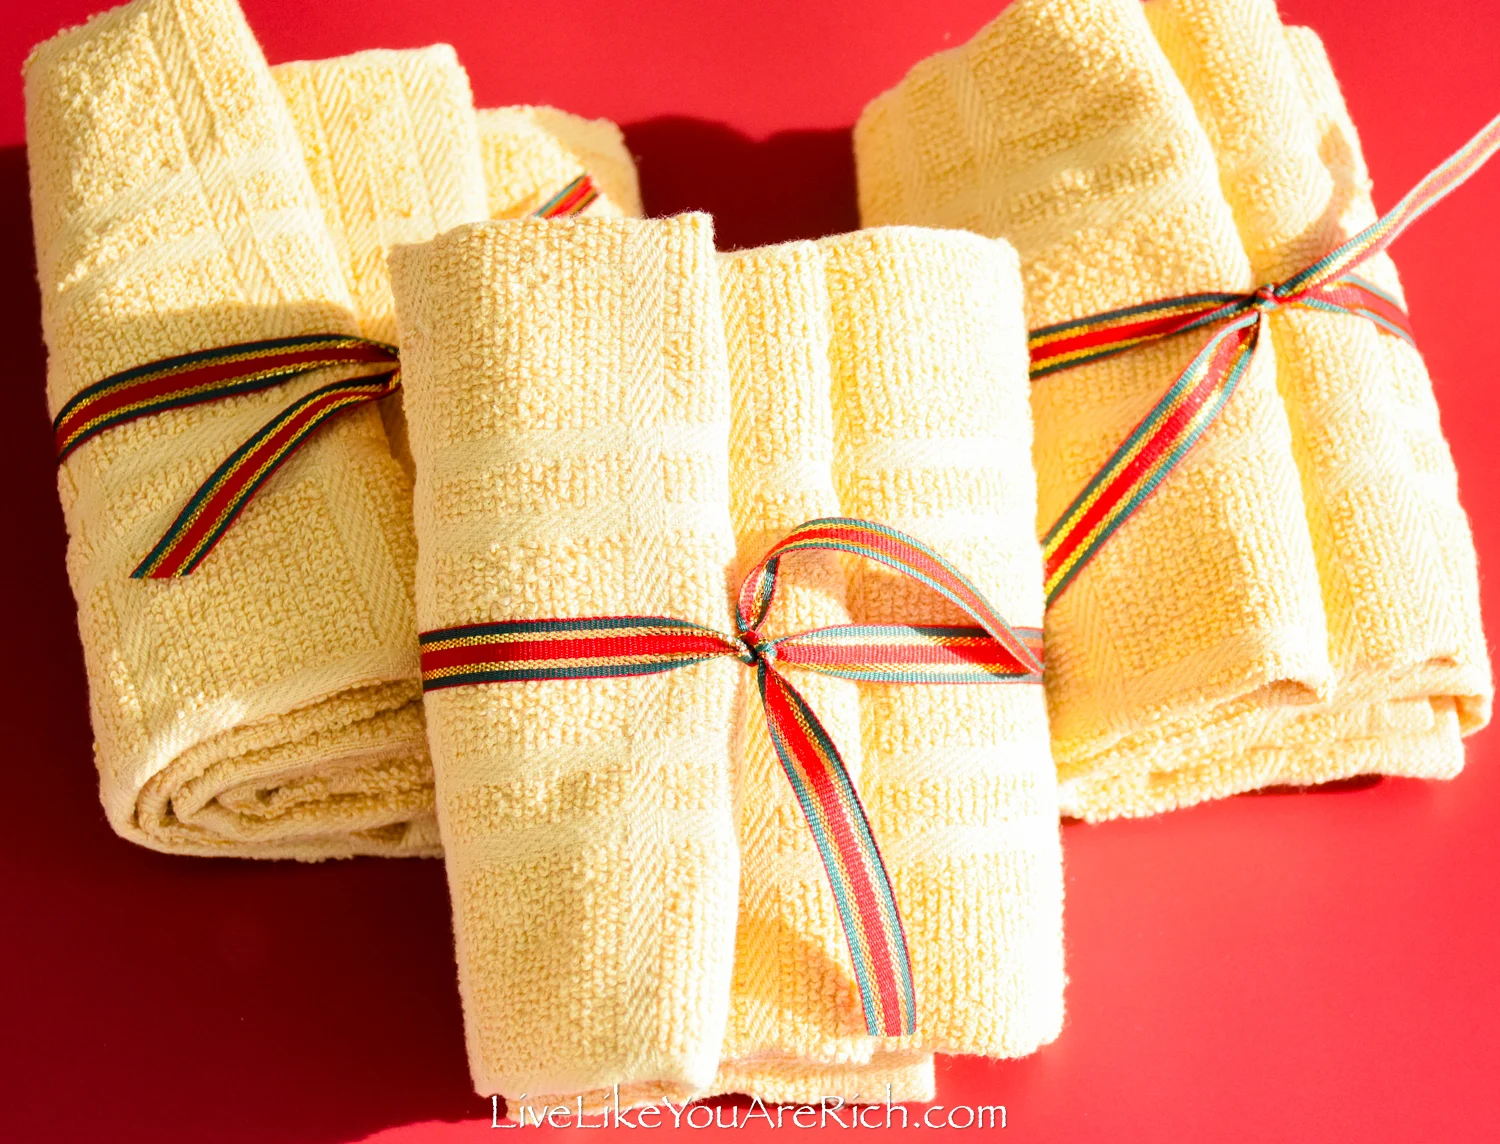 Neighbor Christmas Gift: Hand Towel